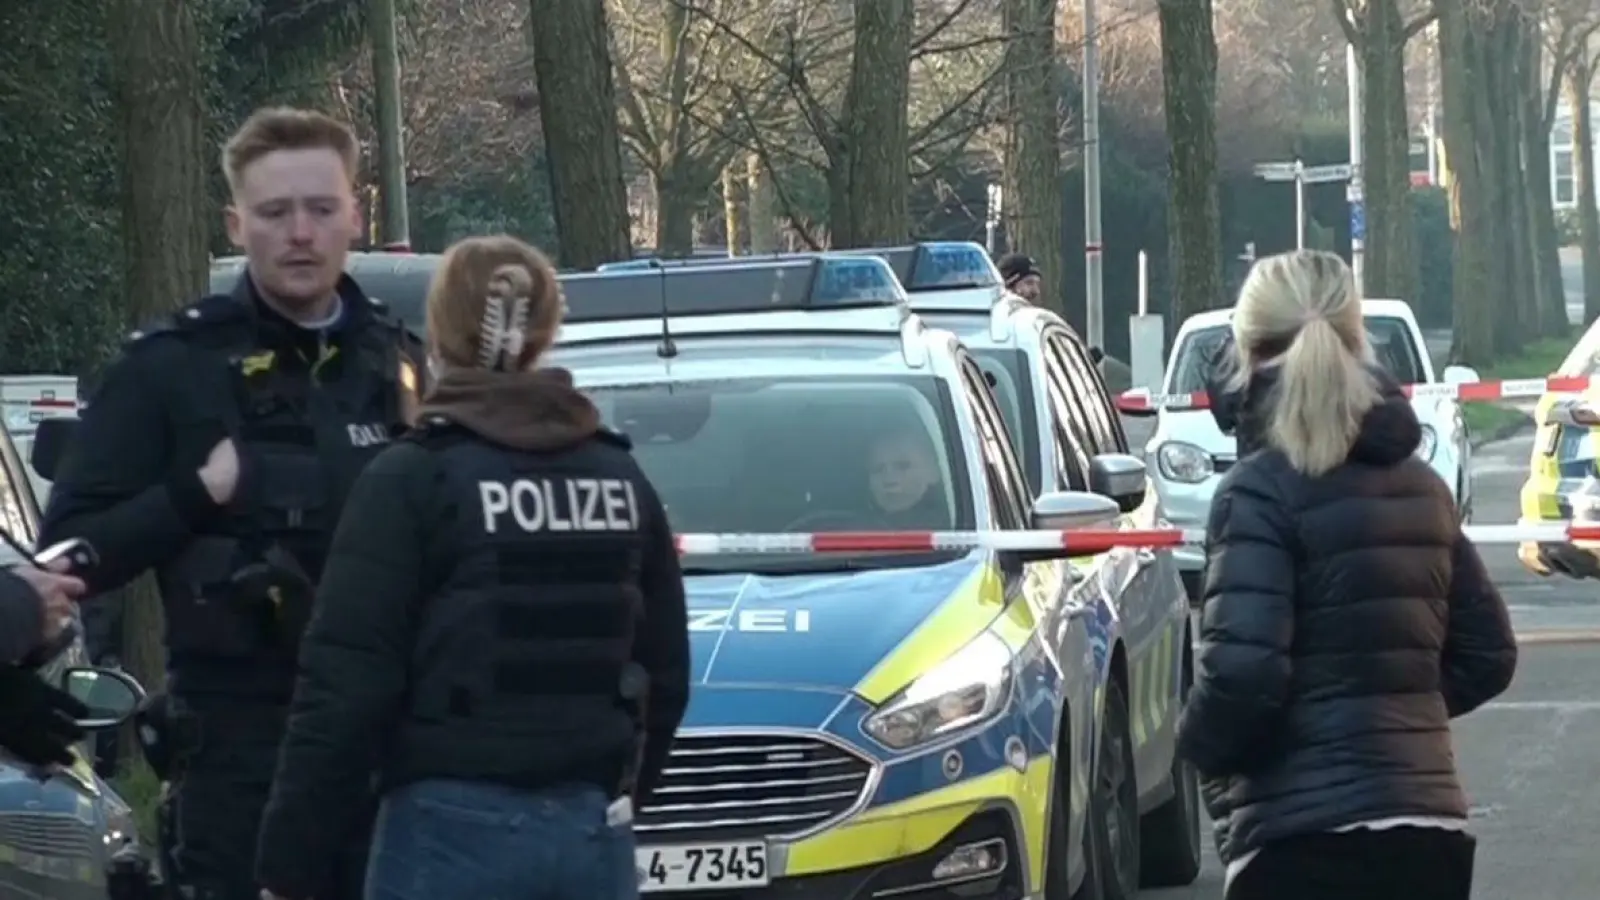 Einsatzkräfte der Polizei stehen in der Nähe des Tatorts in Ochtrup. (Foto: David Poggemann/dpa)